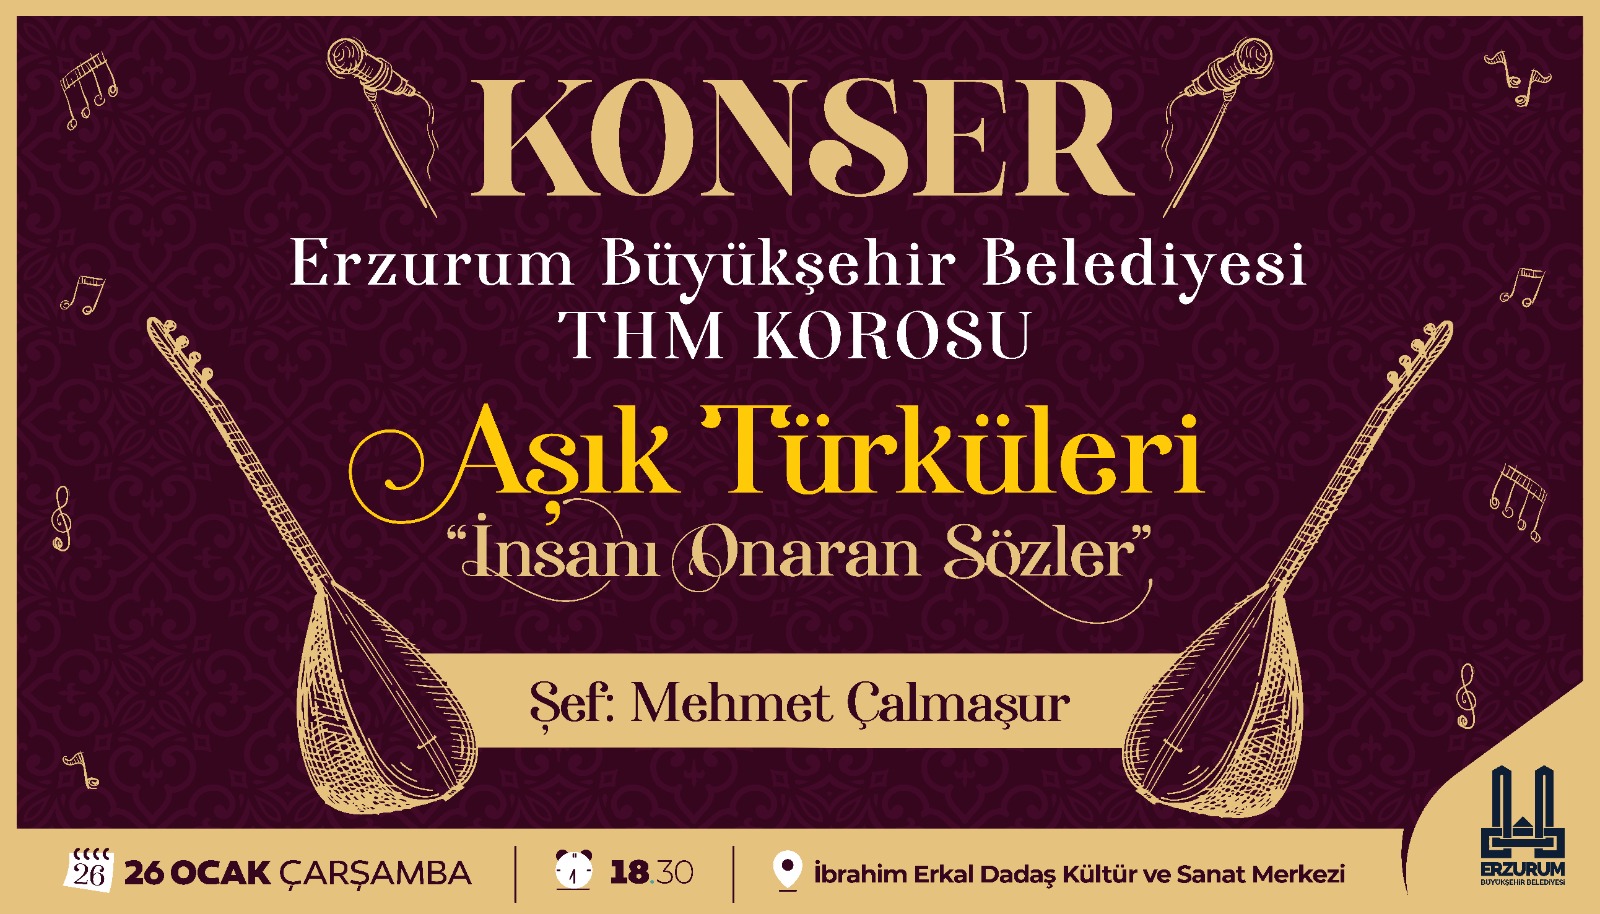 KONSER- Erzurum Büyükşehir Belediyesi THM KOROSU